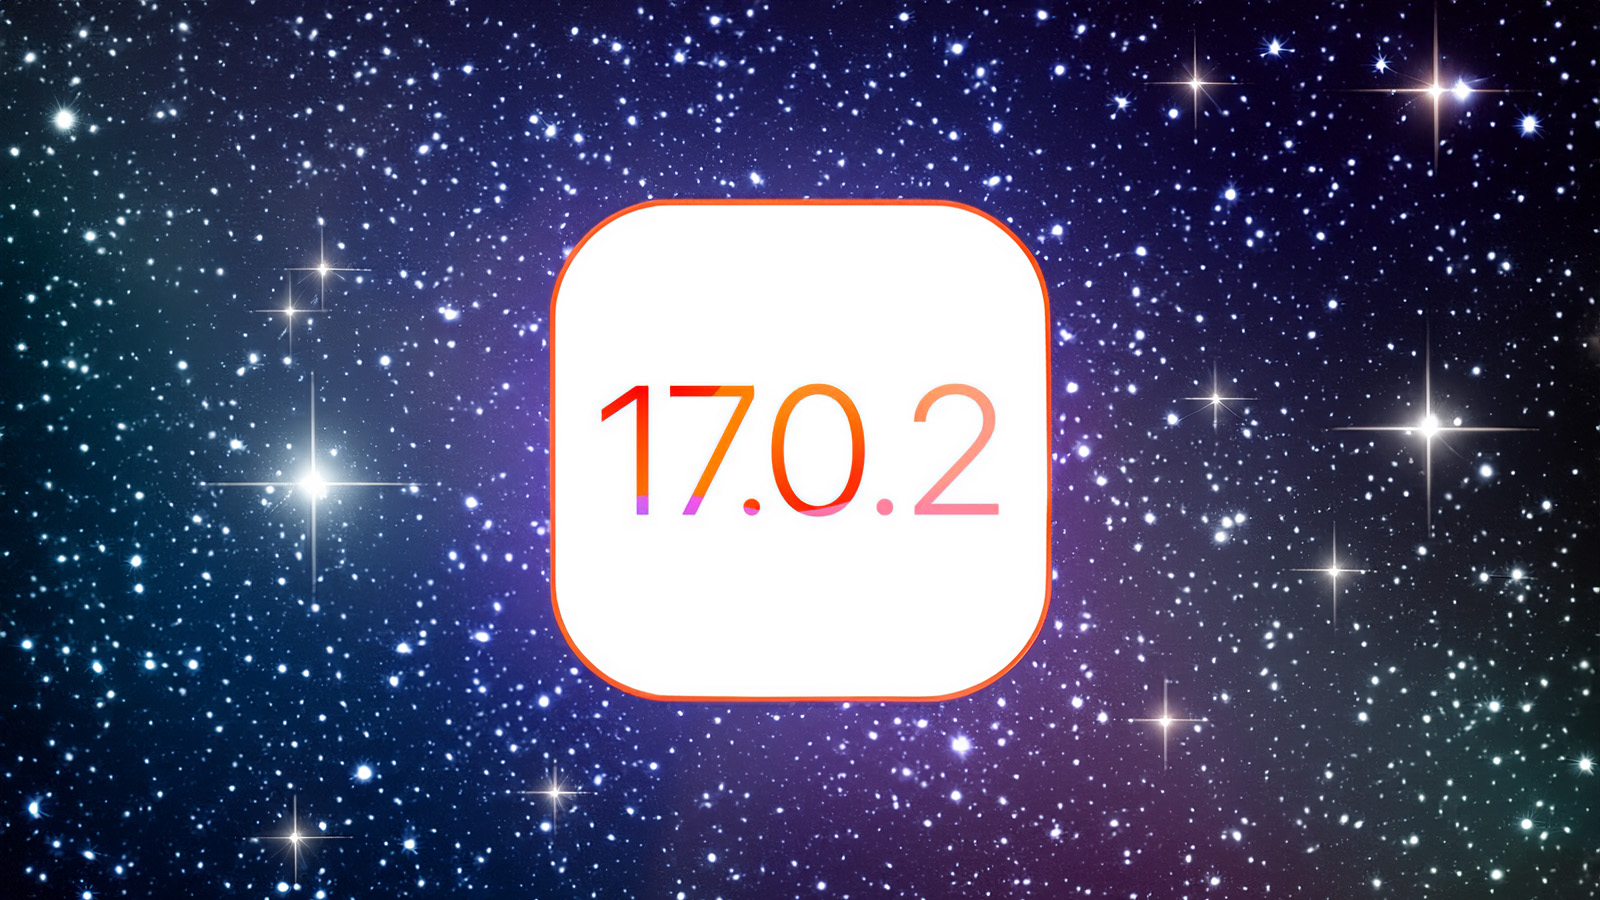 Ji iPhoneIslam.com, dîwarê stêrk bi nivîsa 17 7 2 ya ku Apple û iOS vedihewîne.